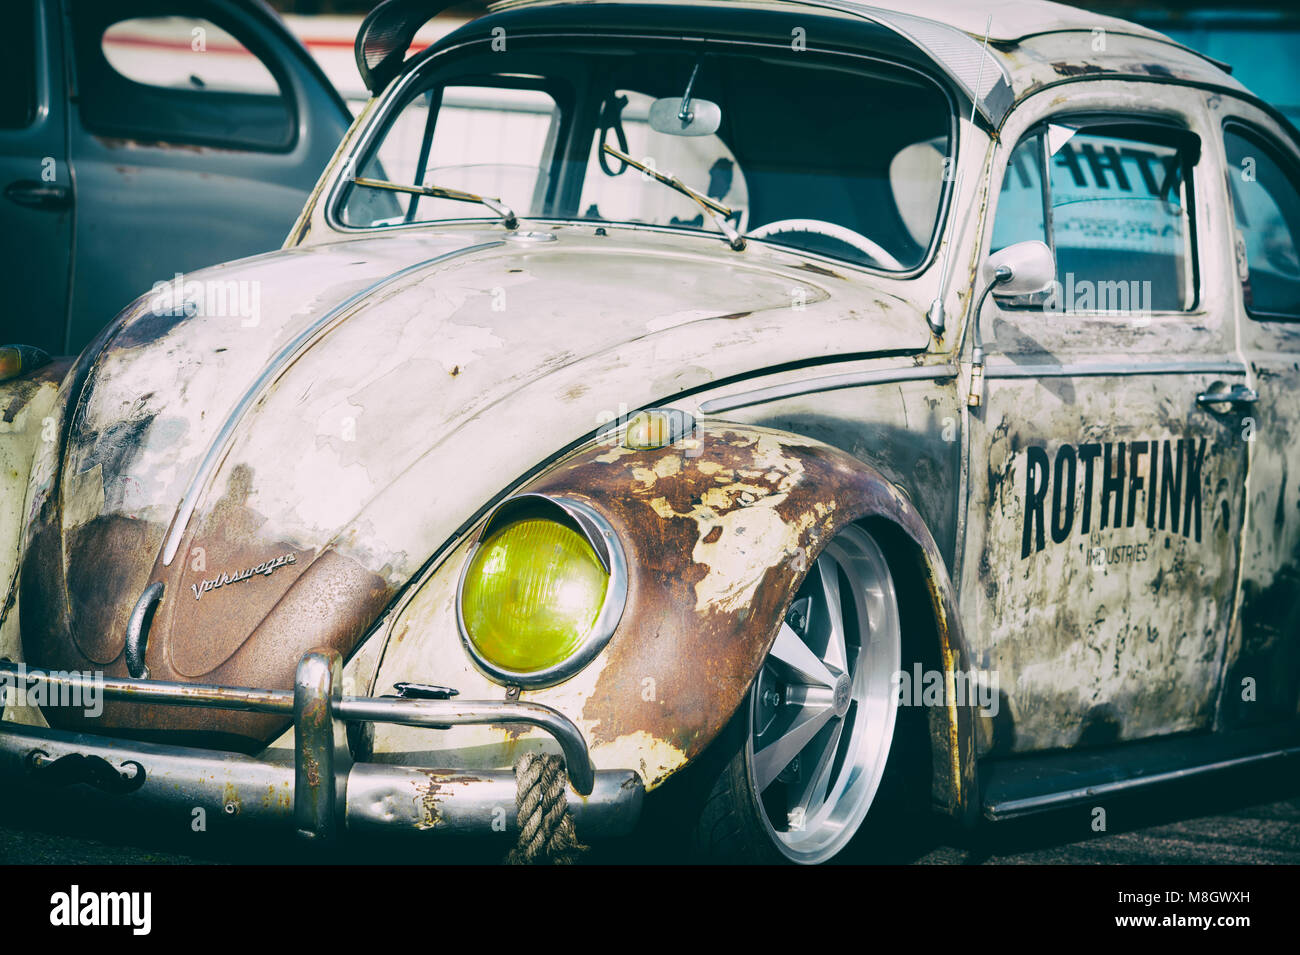 Rusty Rat VW Coccinelle voiture. La conduite à gauche style rat beetle. Vintage filtre appliqué Banque D'Images